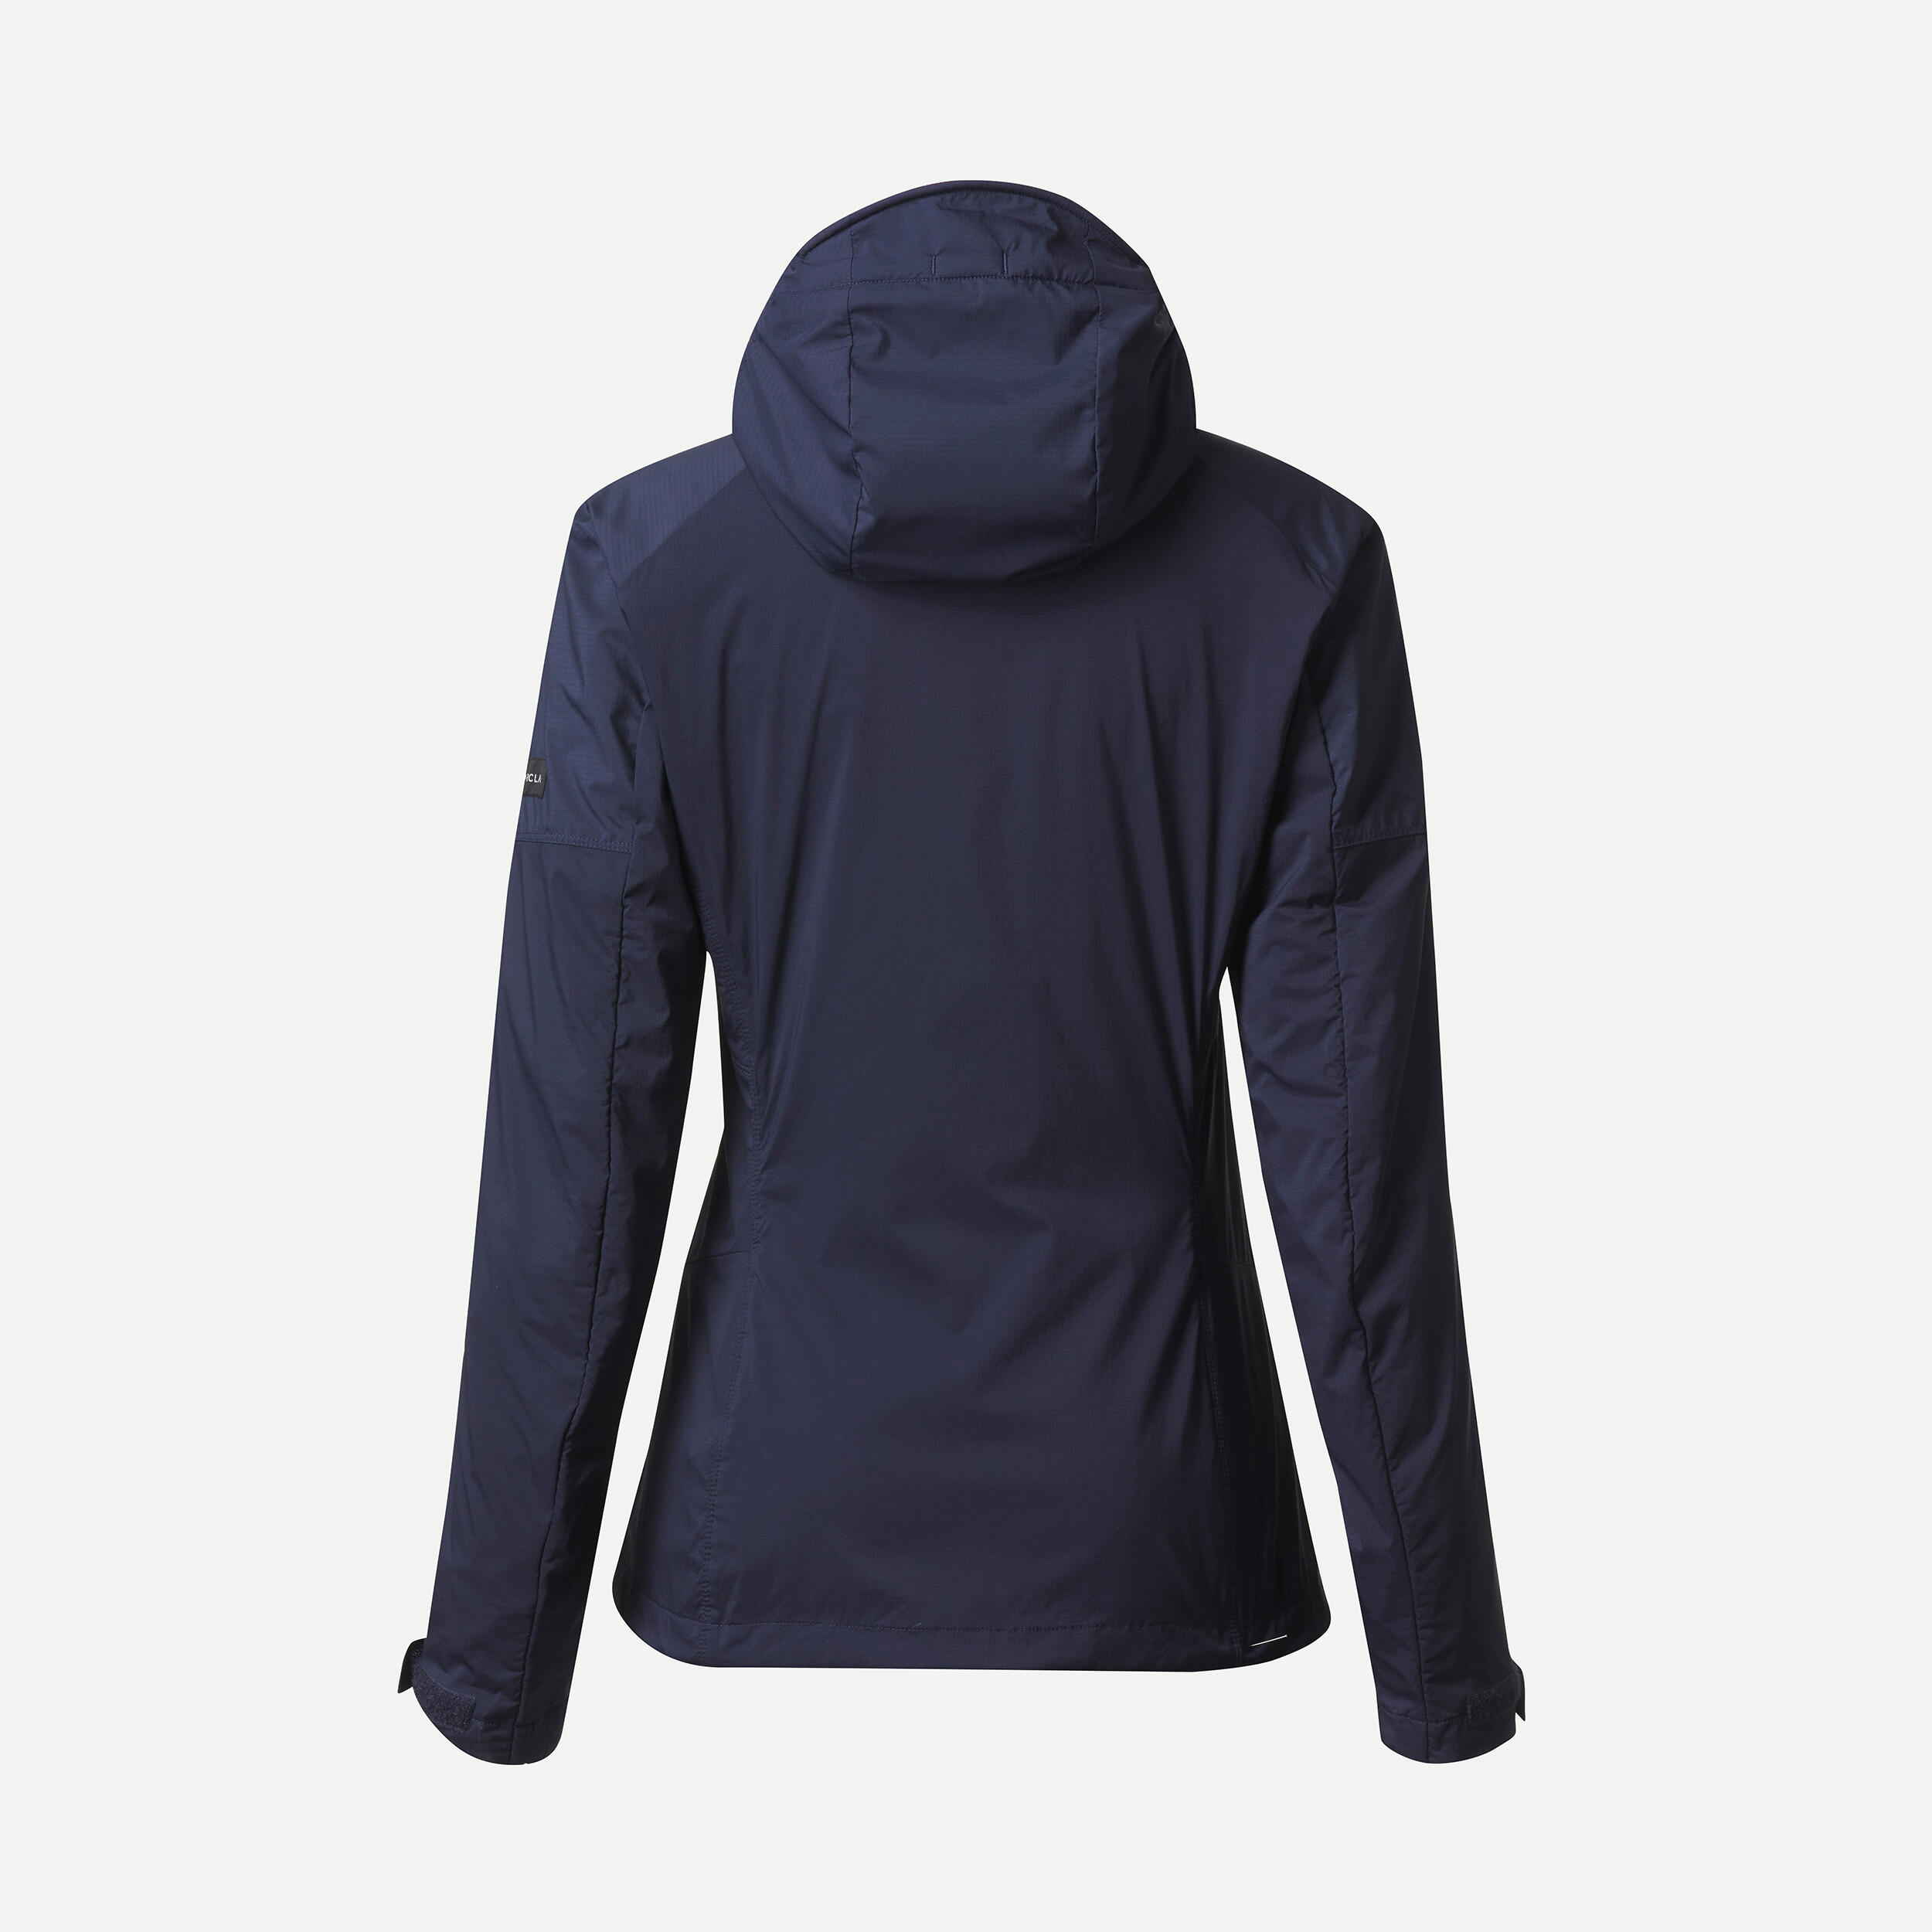 Women’s mountain trekking windbreaker softshell jacket - MT900 navy blue 4/11